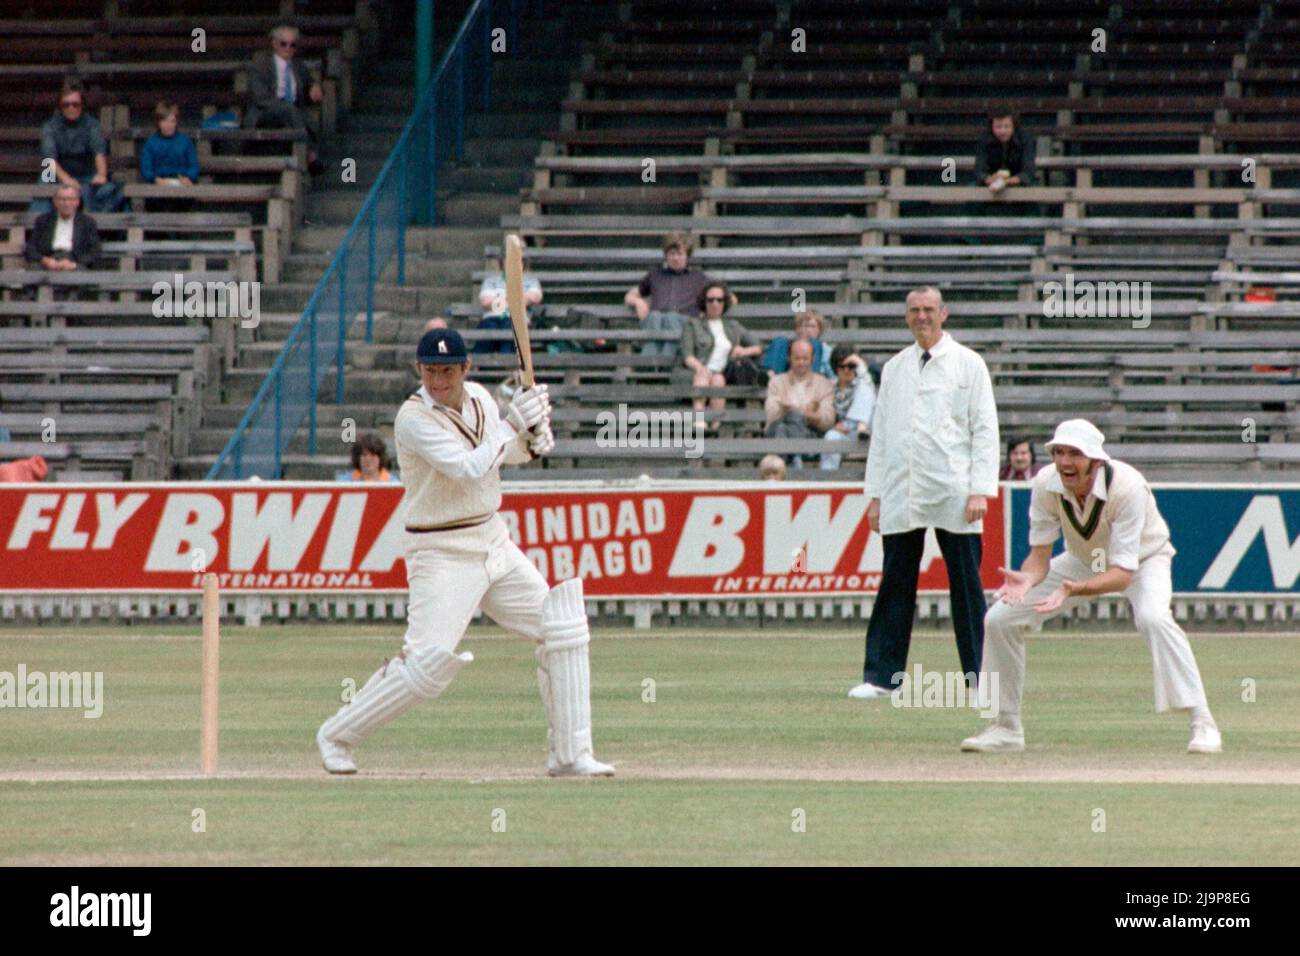 Dennis Amiss, Batting for Warwickshire CCC / Australians, Edgbaston, Birmingham, England 1977. Fielder ist Richie Robinson (Australien). Stockfoto